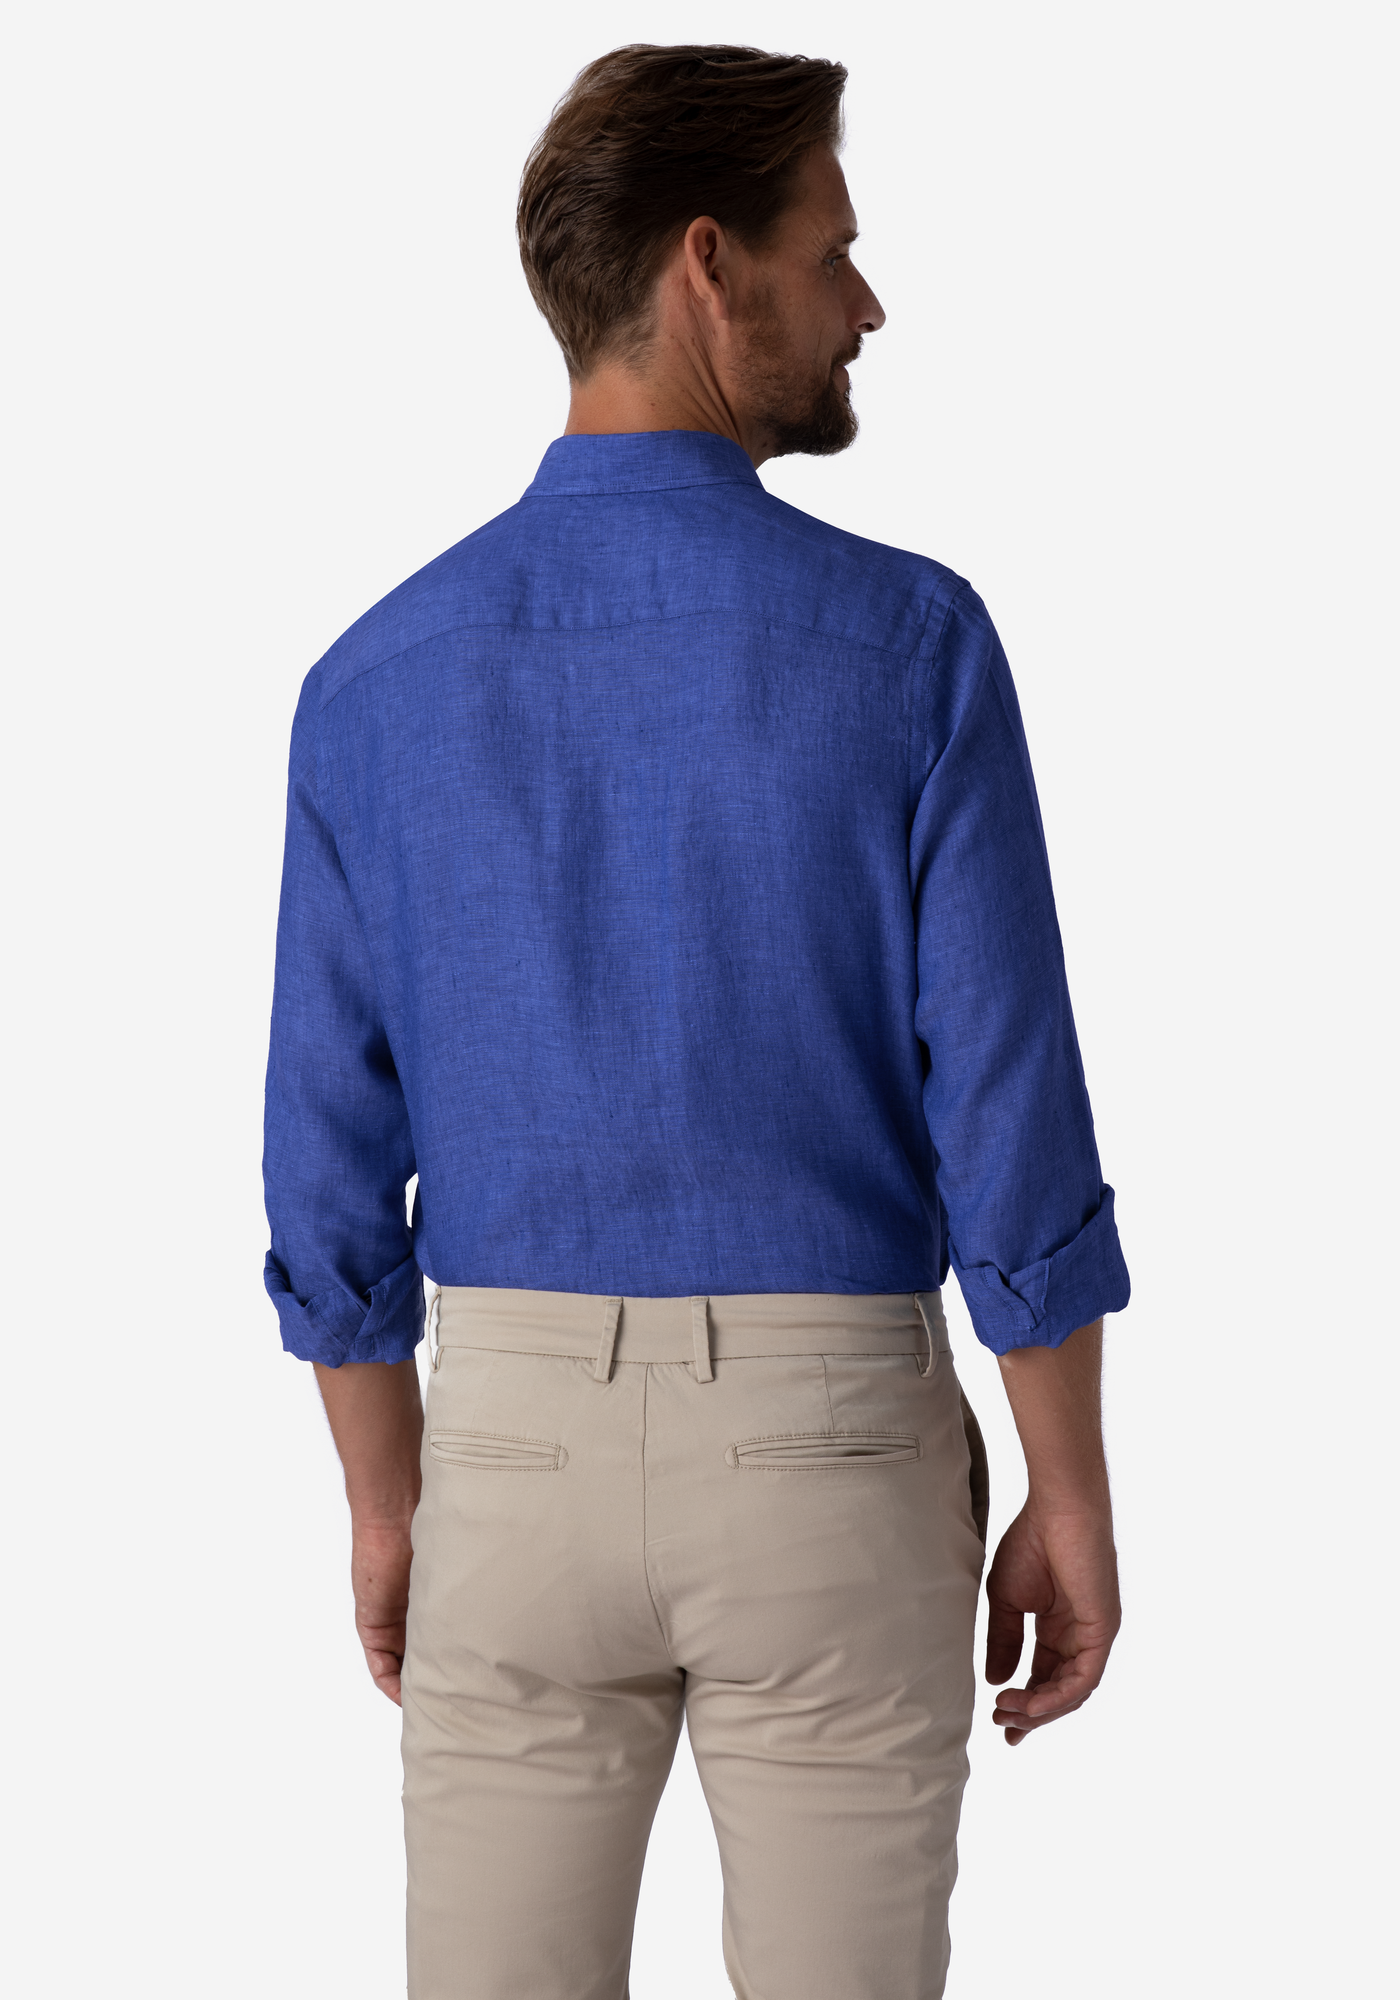 Delft Blue Belgian Linen Shirt